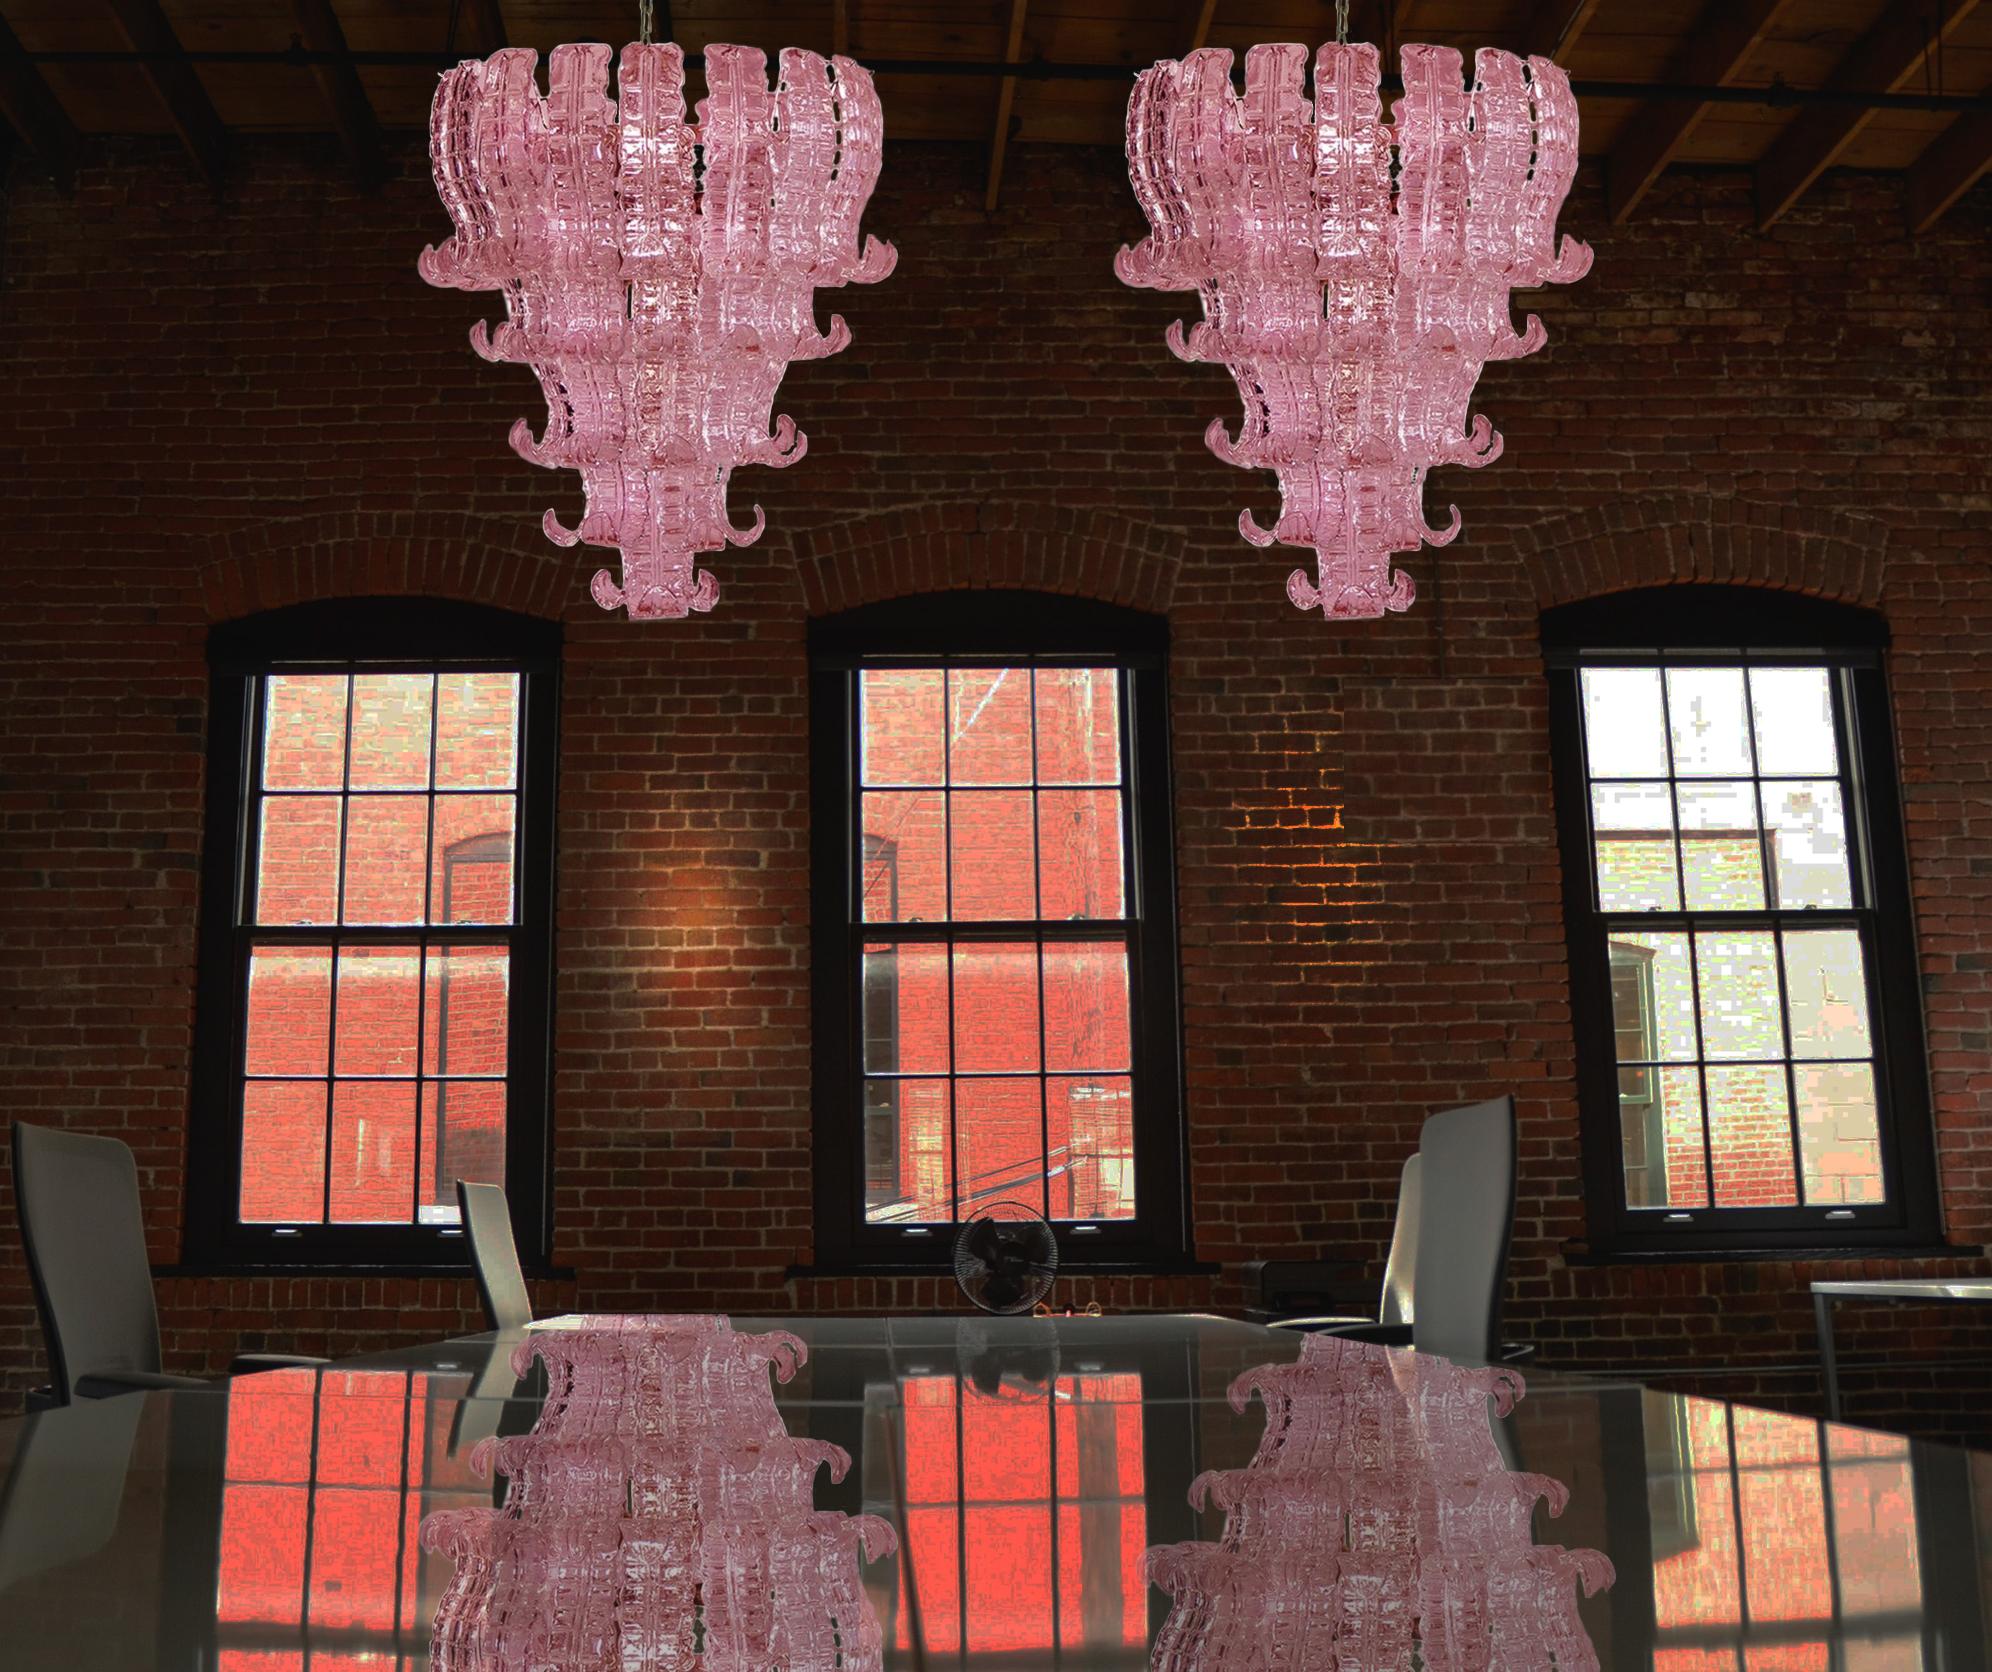 Belle et énorme paire de lustres italiens de Murano composée de 52 splendides verres roses qui donnent un aspect très élégant
Période : 1970s
Dimensions : 55.140 cm de hauteur avec chaîne, 80 cm de hauteur sans chaîne, 70 cm de